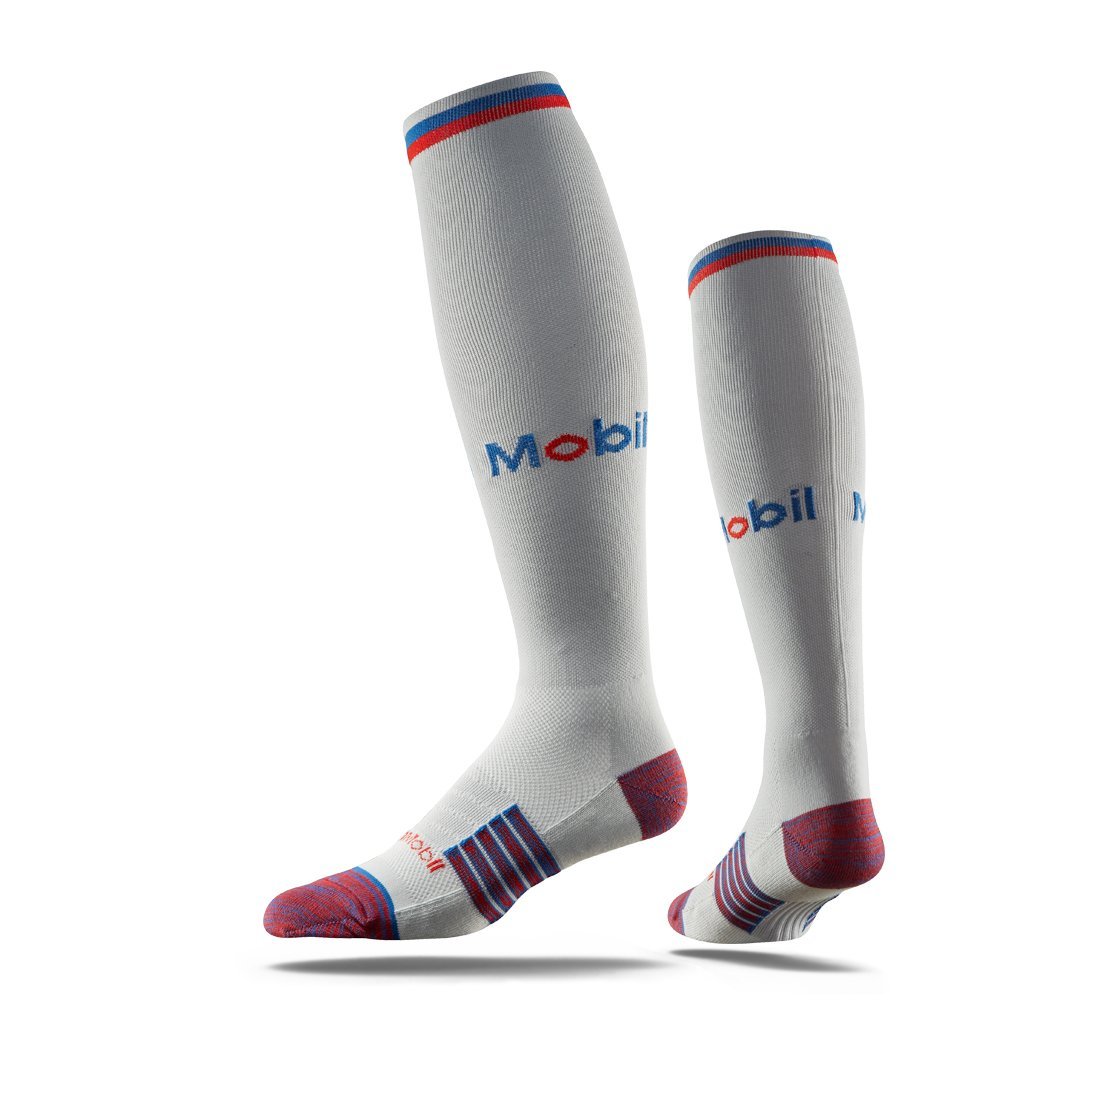 socks customizing company